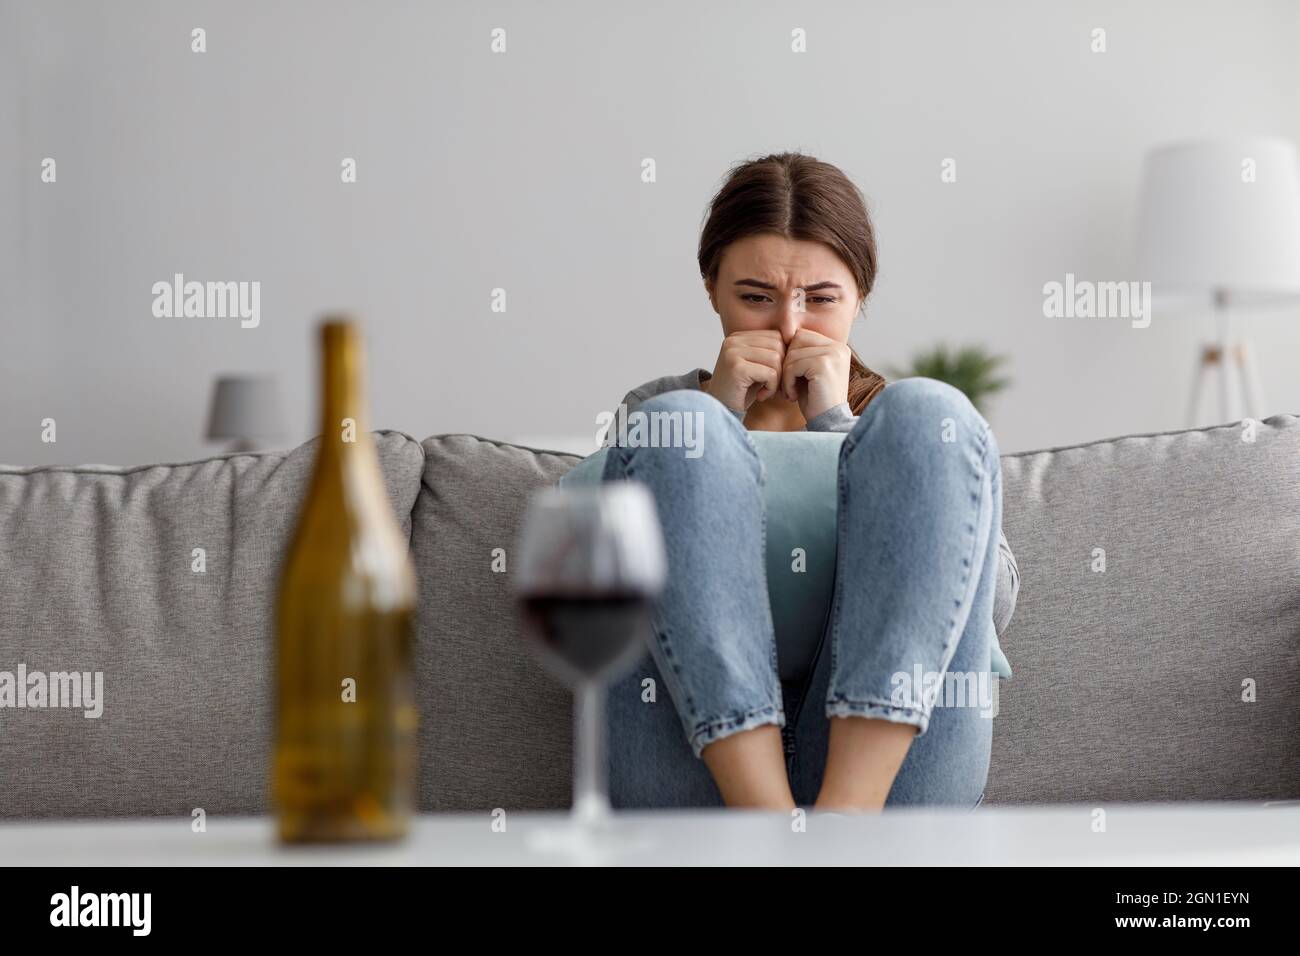 Trauriges Weinen verzweifelte junge europäische Dame, die unter Stress, Trauer und Schwierigkeiten mit Flasche und Glas Wein litt Stockfoto